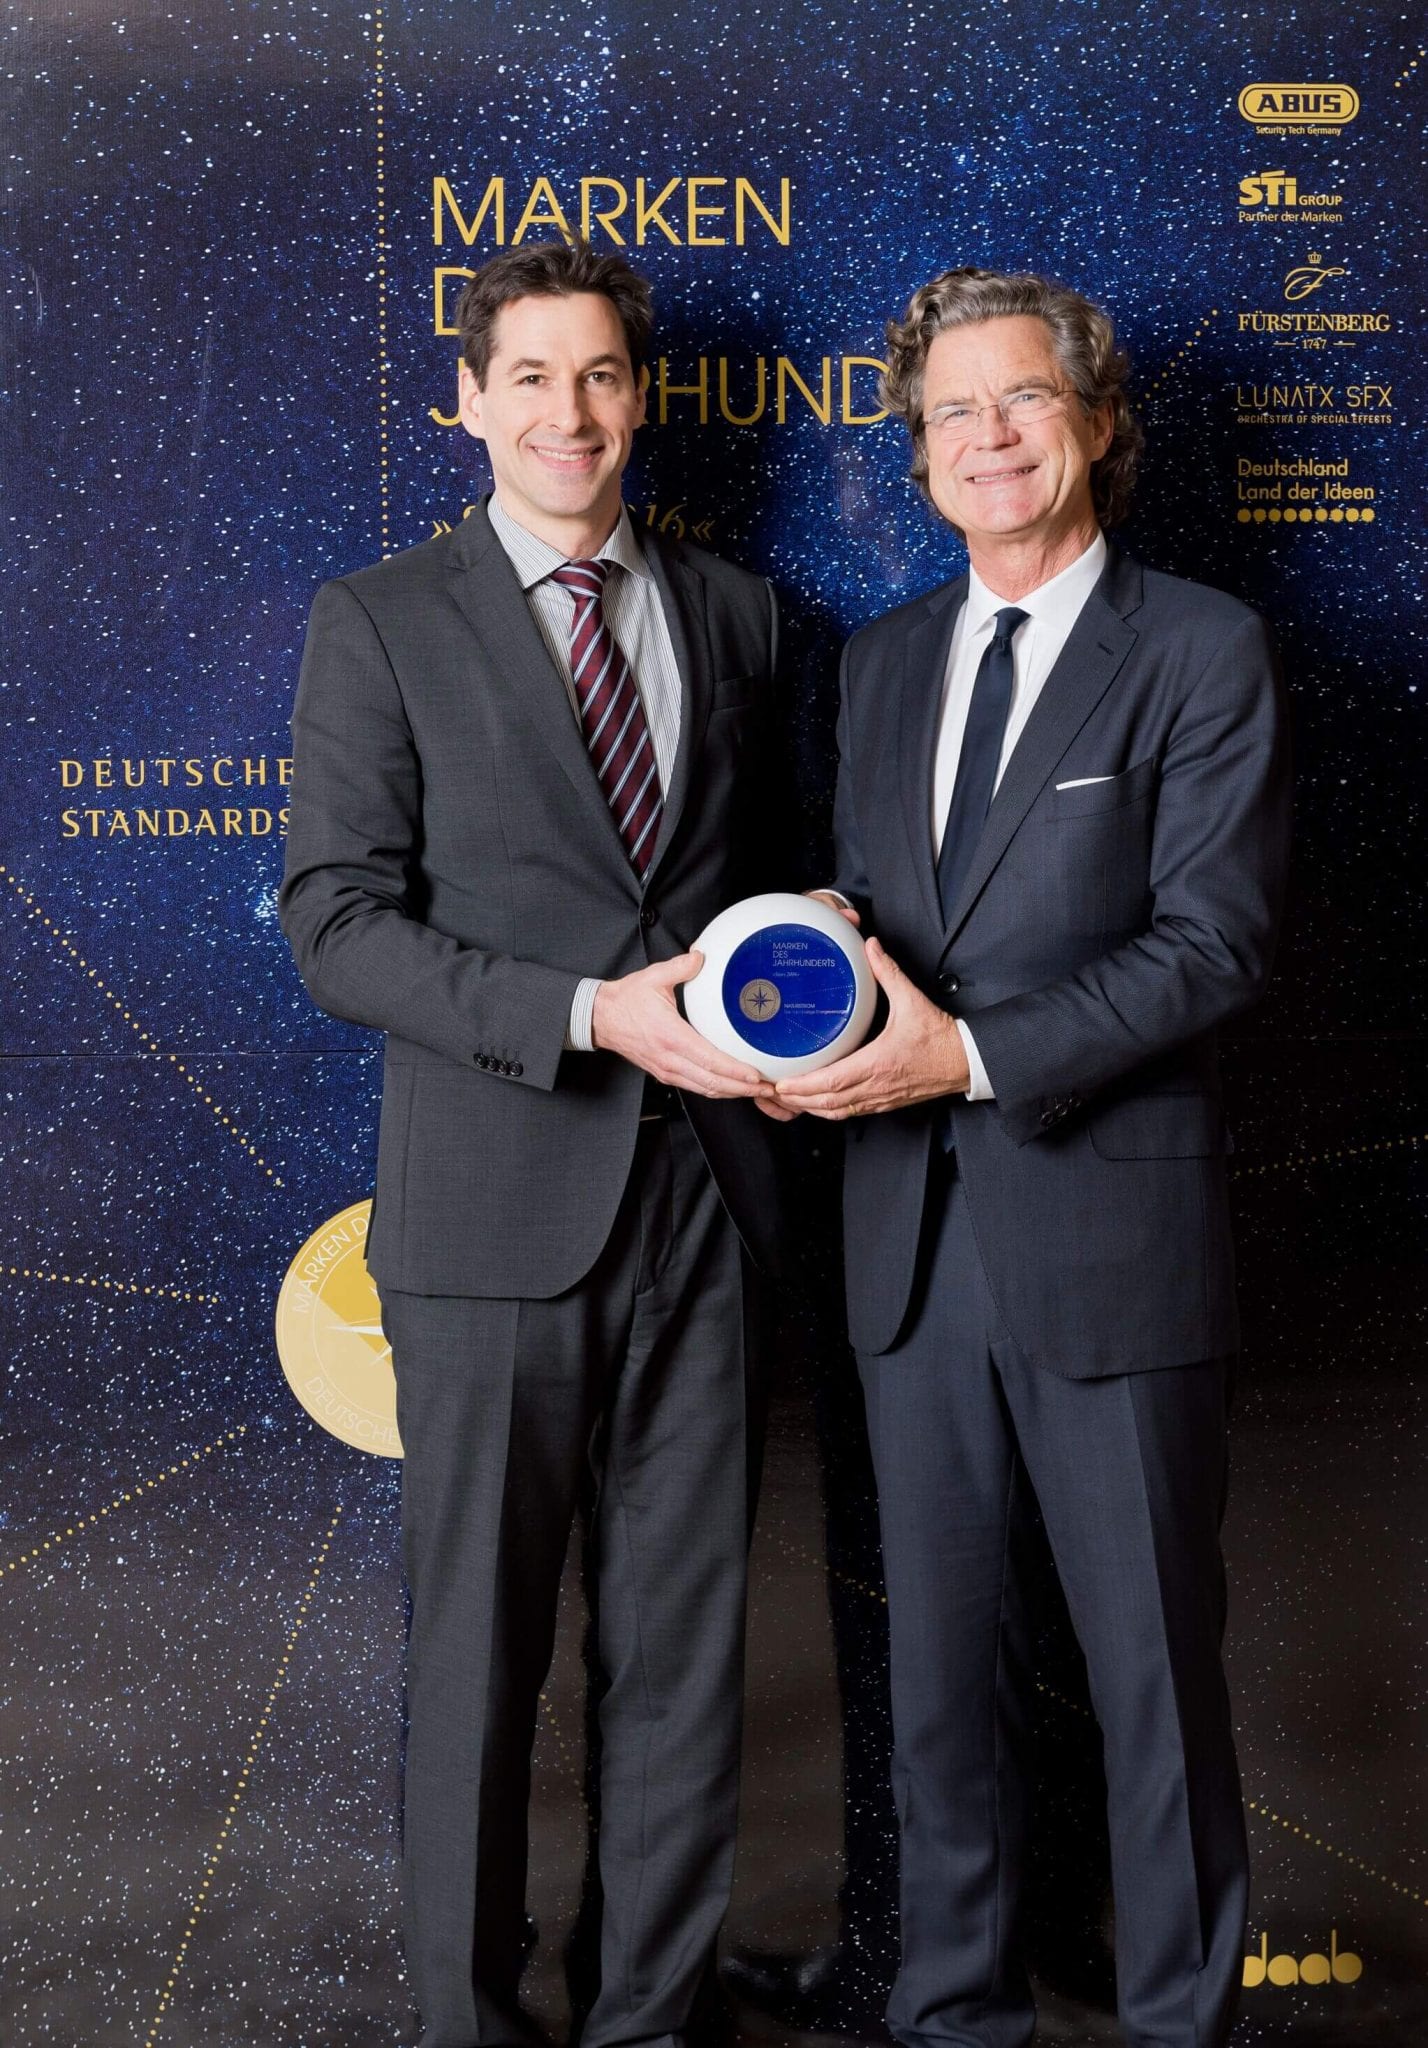 NATURSTROM-Marketingleiter Dr. Ernst Raupach (links) nimmt den Preis für die "Marke des Jahrhunderts" entgegen. © Deutsche Standards/pjk-atelier